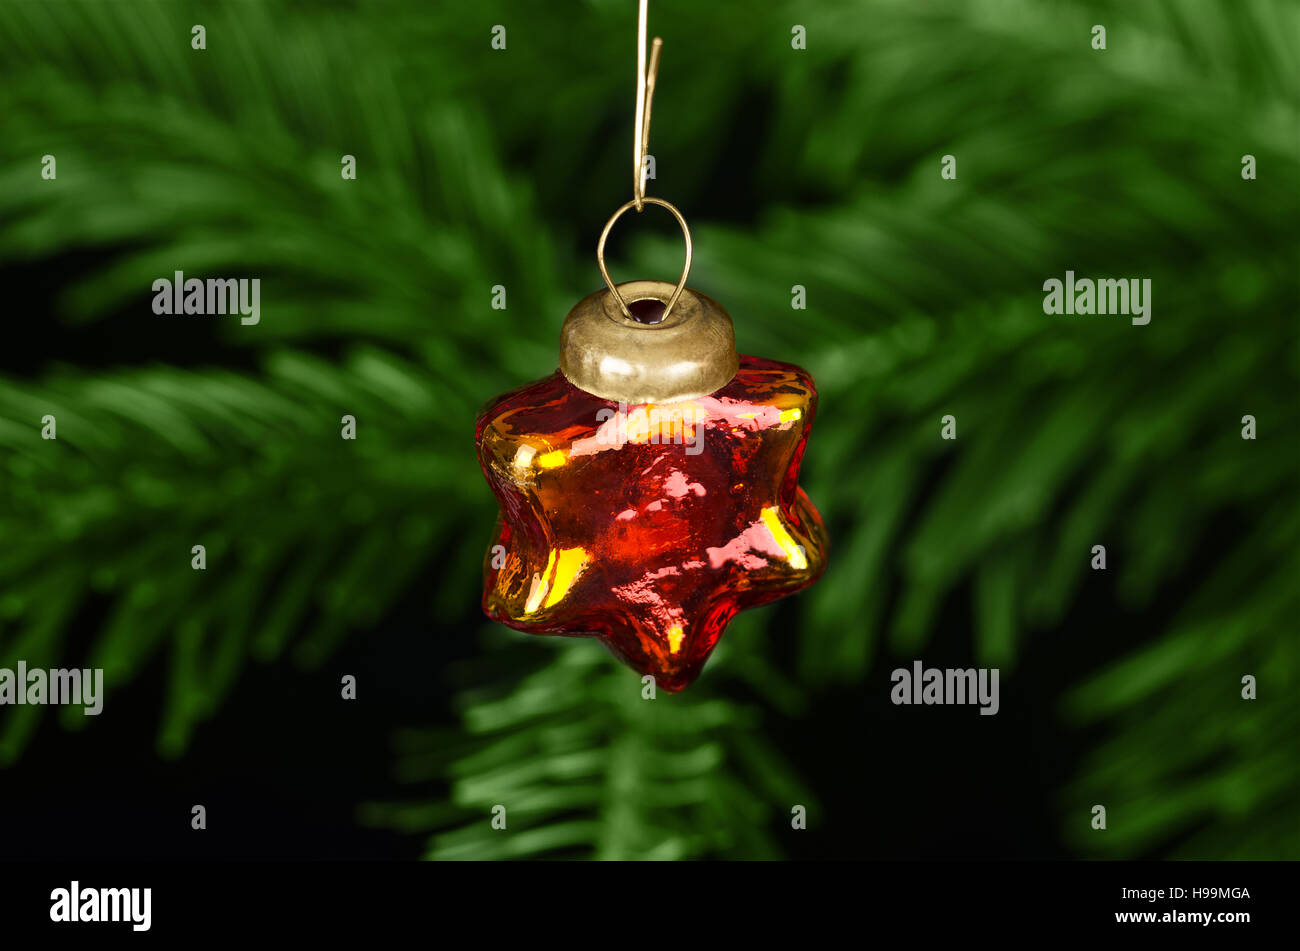 Glas Sterne Christbaumkugel Christbaumkugeln. Handgemachte Xmas-Baum-Ornament, antik, klein und glänzend, vor einer Tanne Zweig. Stockfoto